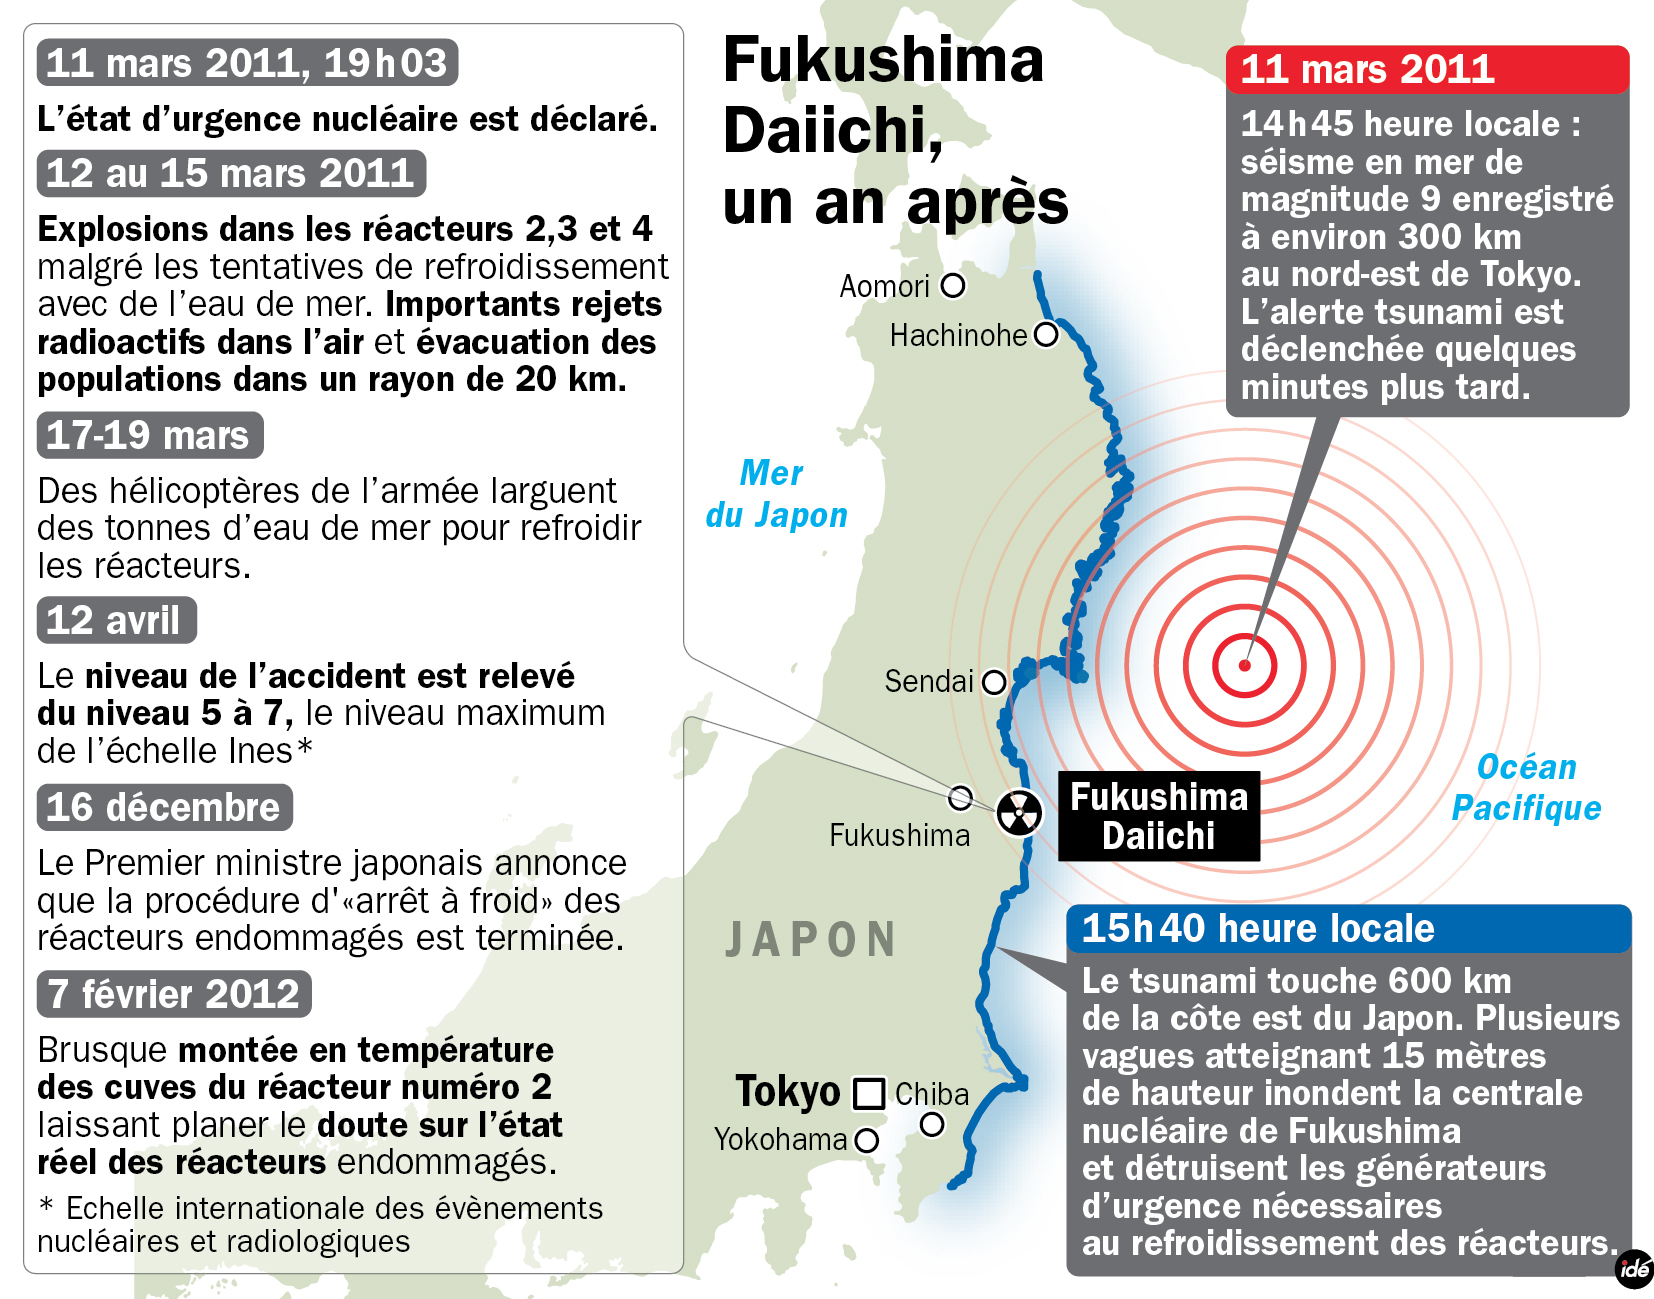 Un an après le séisme et le tsunami, la centrale de Fujkushima-Daiishi fait toujours parler d'elle. Les températures ne semblent pas descendre comme on l'espérerait. © Idé